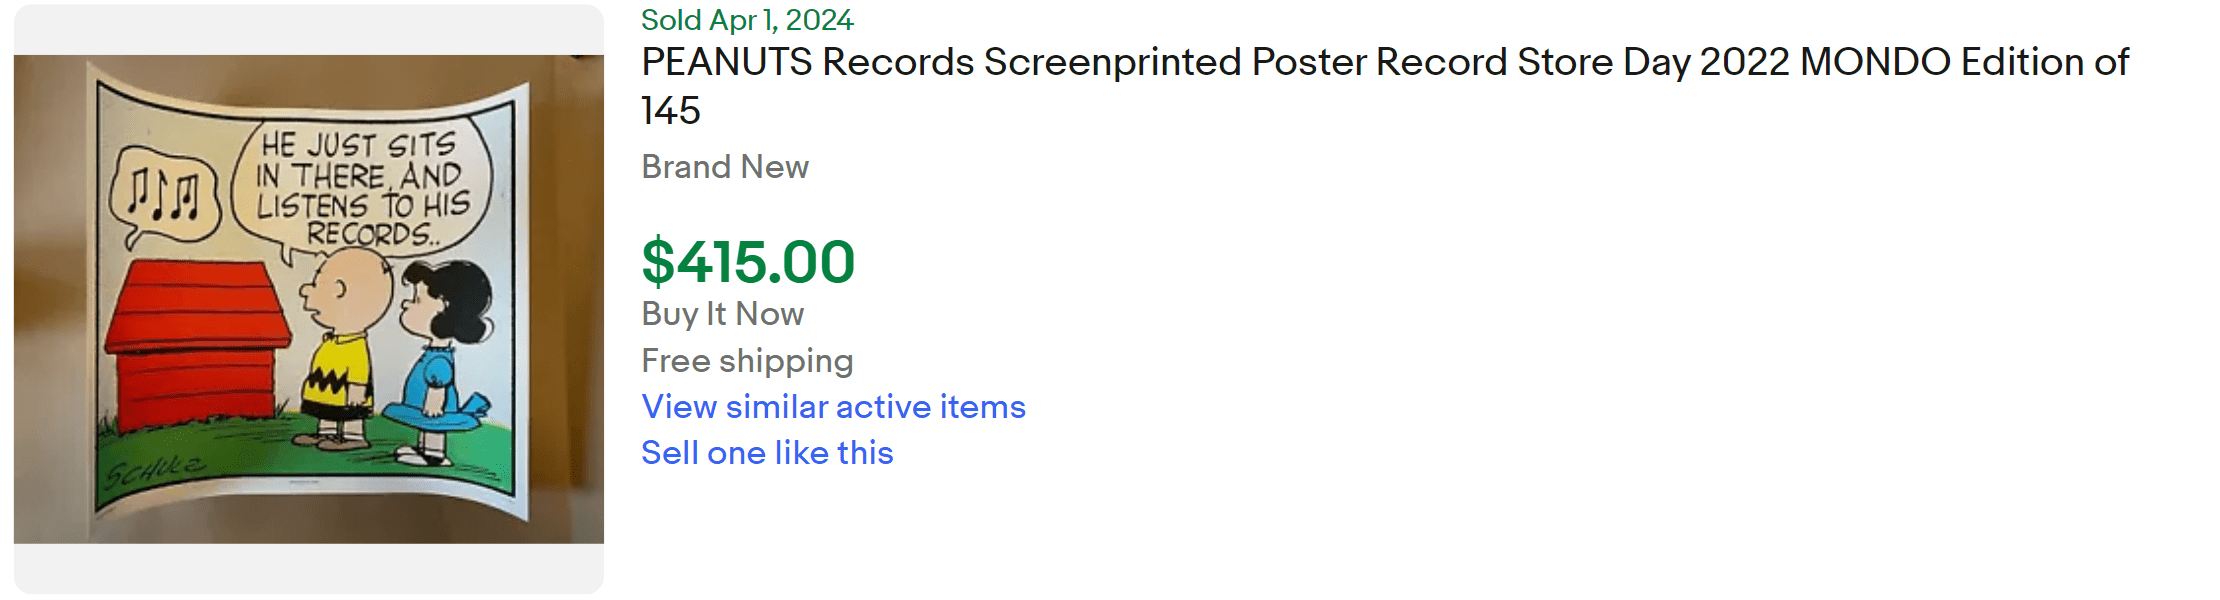 Mondo Peanuts Poster Record Store Day for Sale